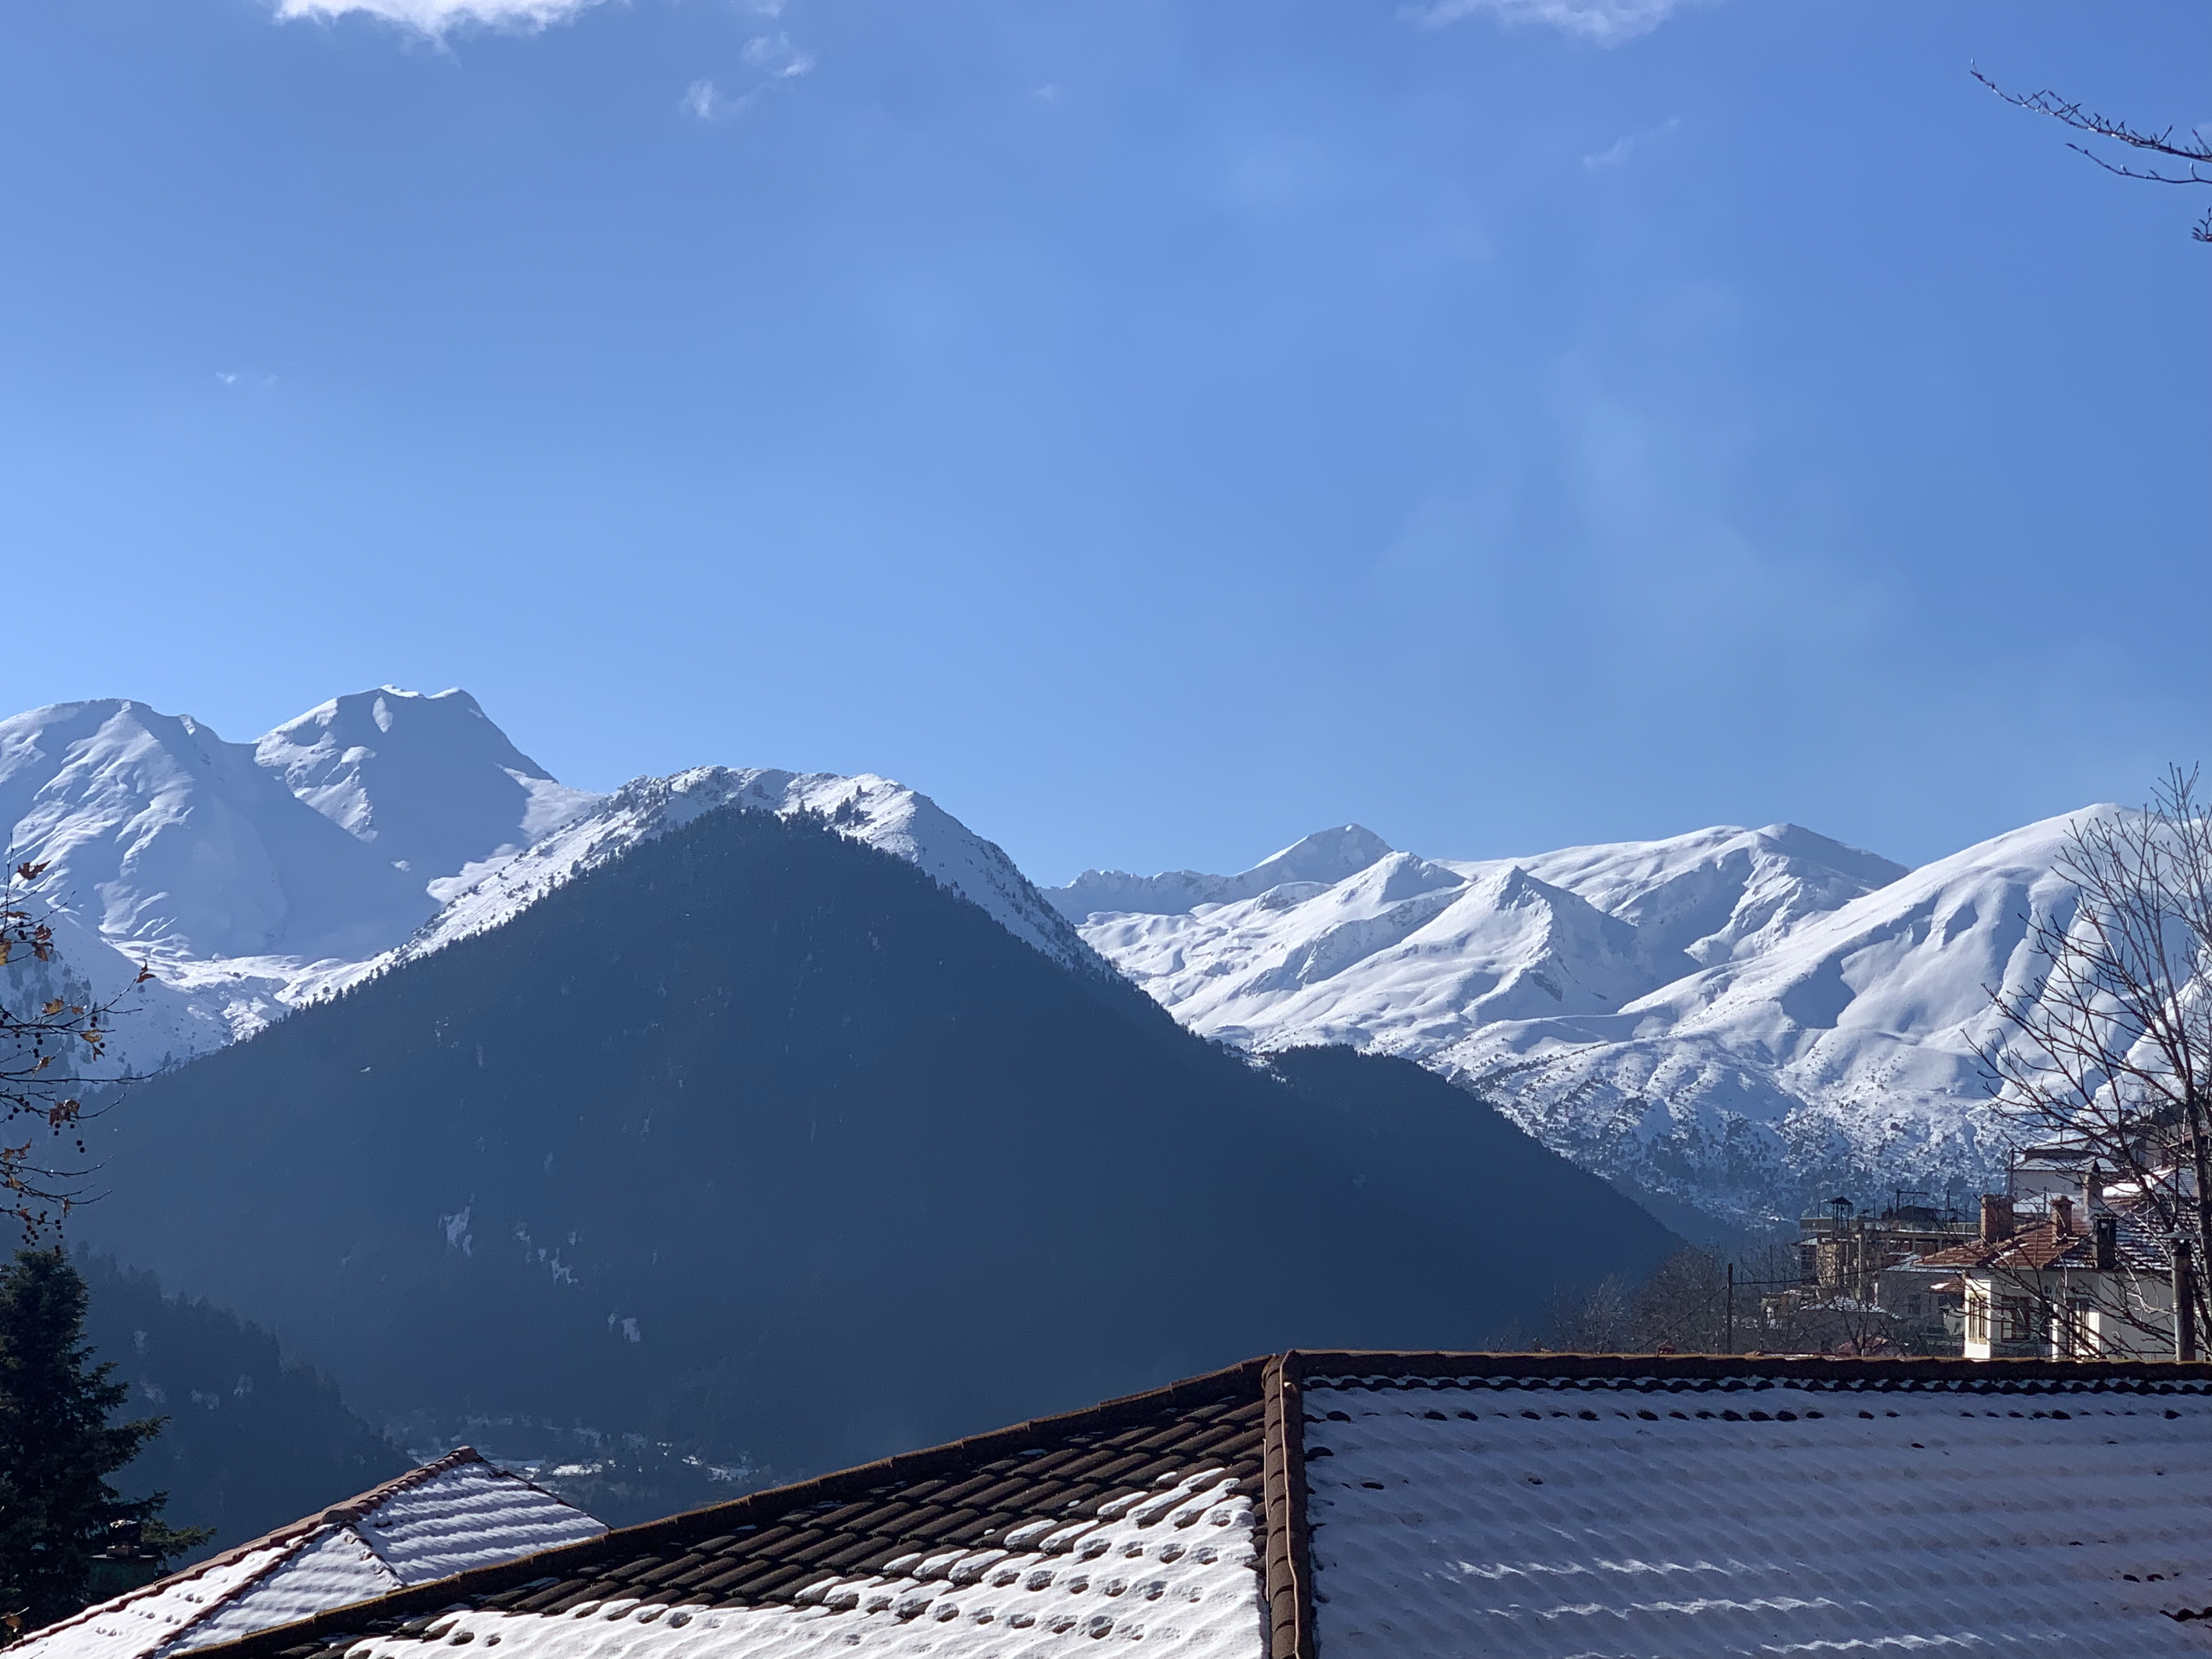 Χιονισμένα -ασβεστολιθικά - βουνά στην Πίνδο (όρος Περιστέρι)